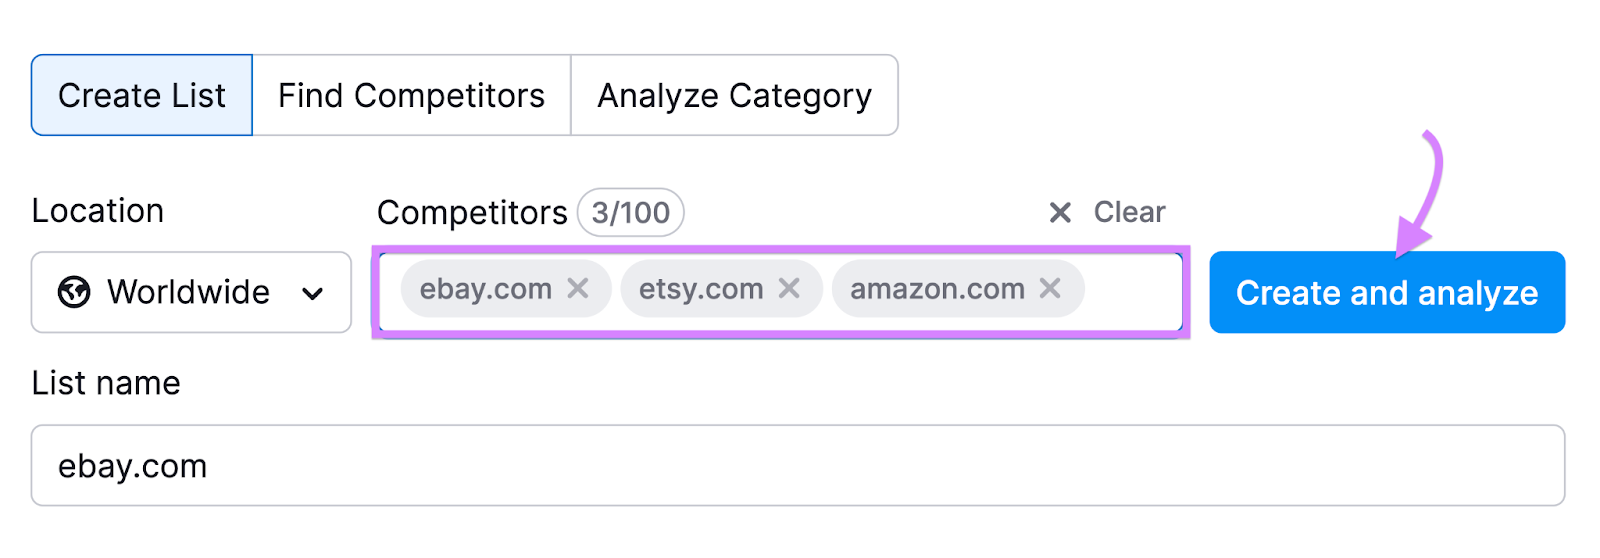 "ebay.com" "etsy.com" "amazon.com" entered into the Market Explorer tool